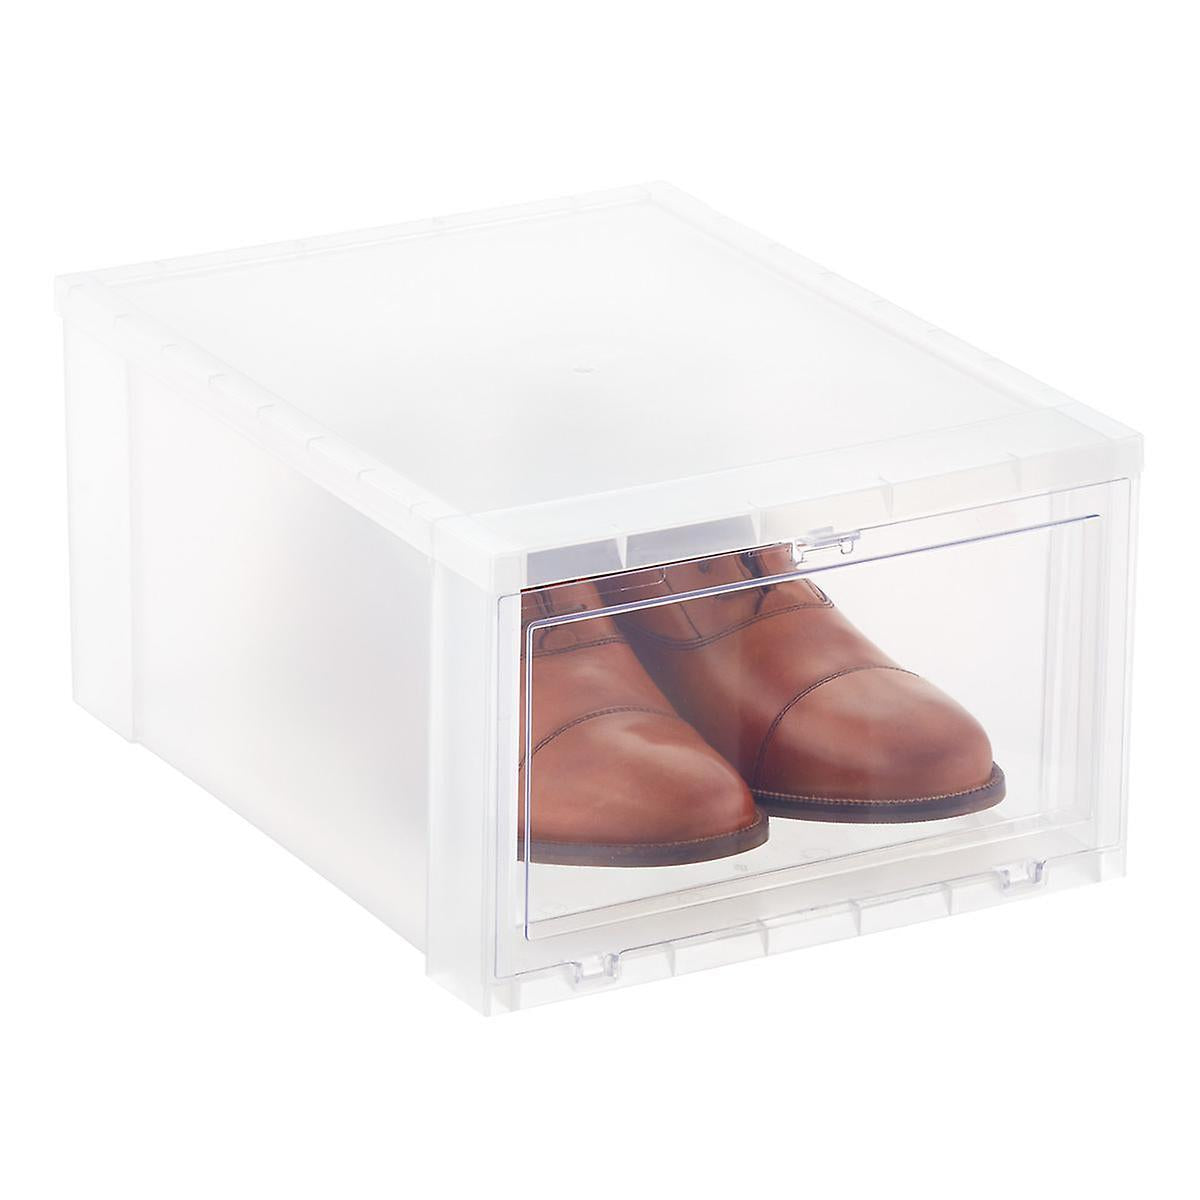 Large Drop-Front Shoe Box